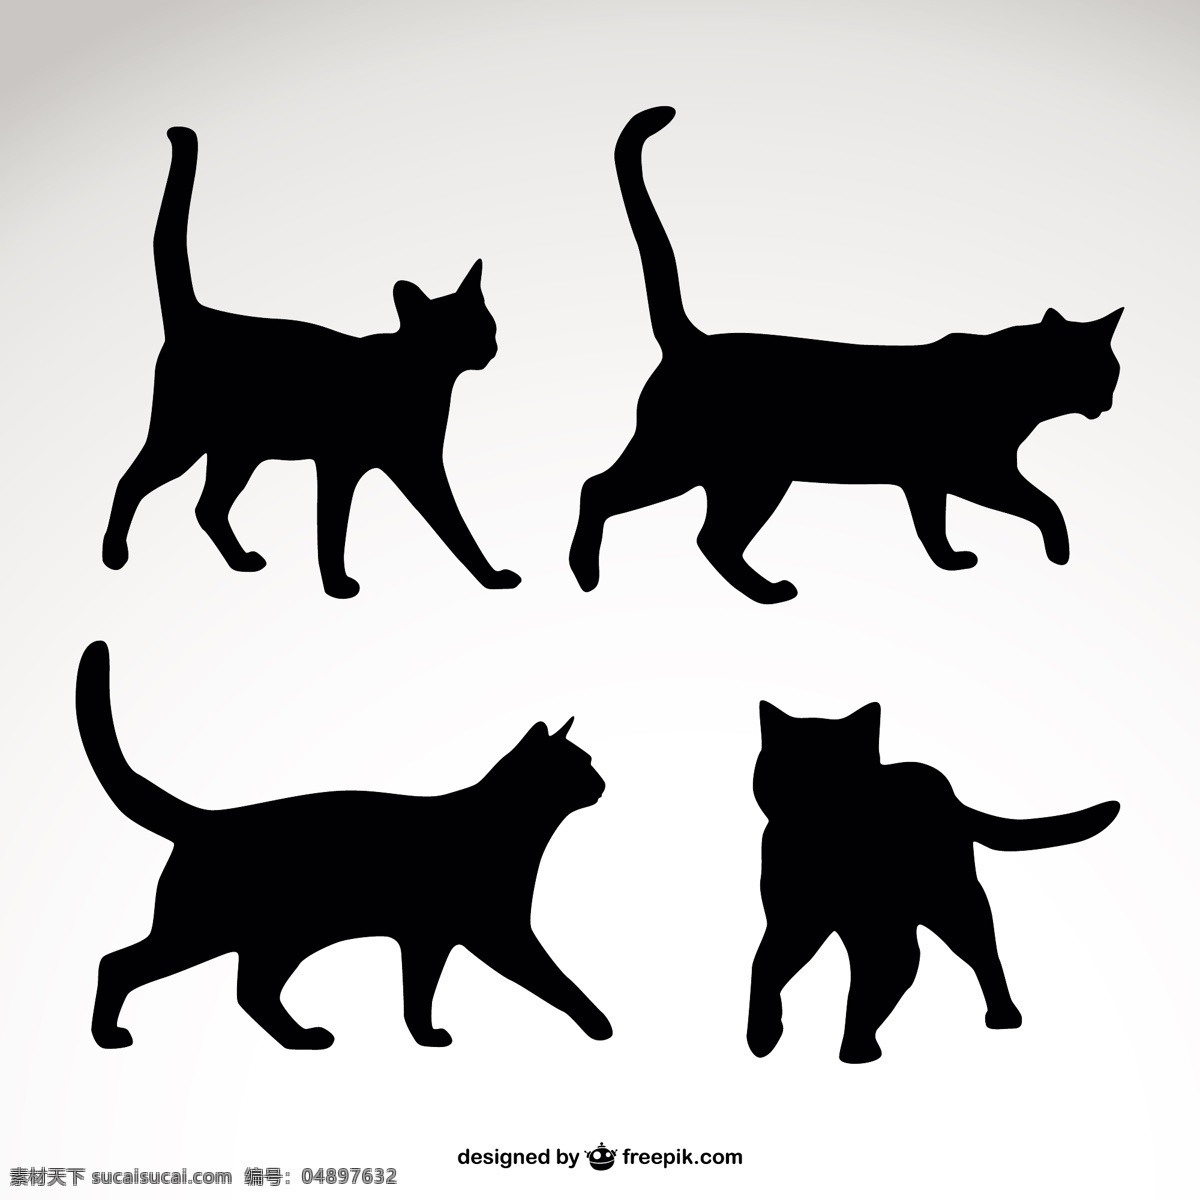 猫的轮廓集 模板 猫 动物 图形 轮廓 布局 符号 图形设计 黑色 宠物 形状 插图 设计元素 简单 元素 白色